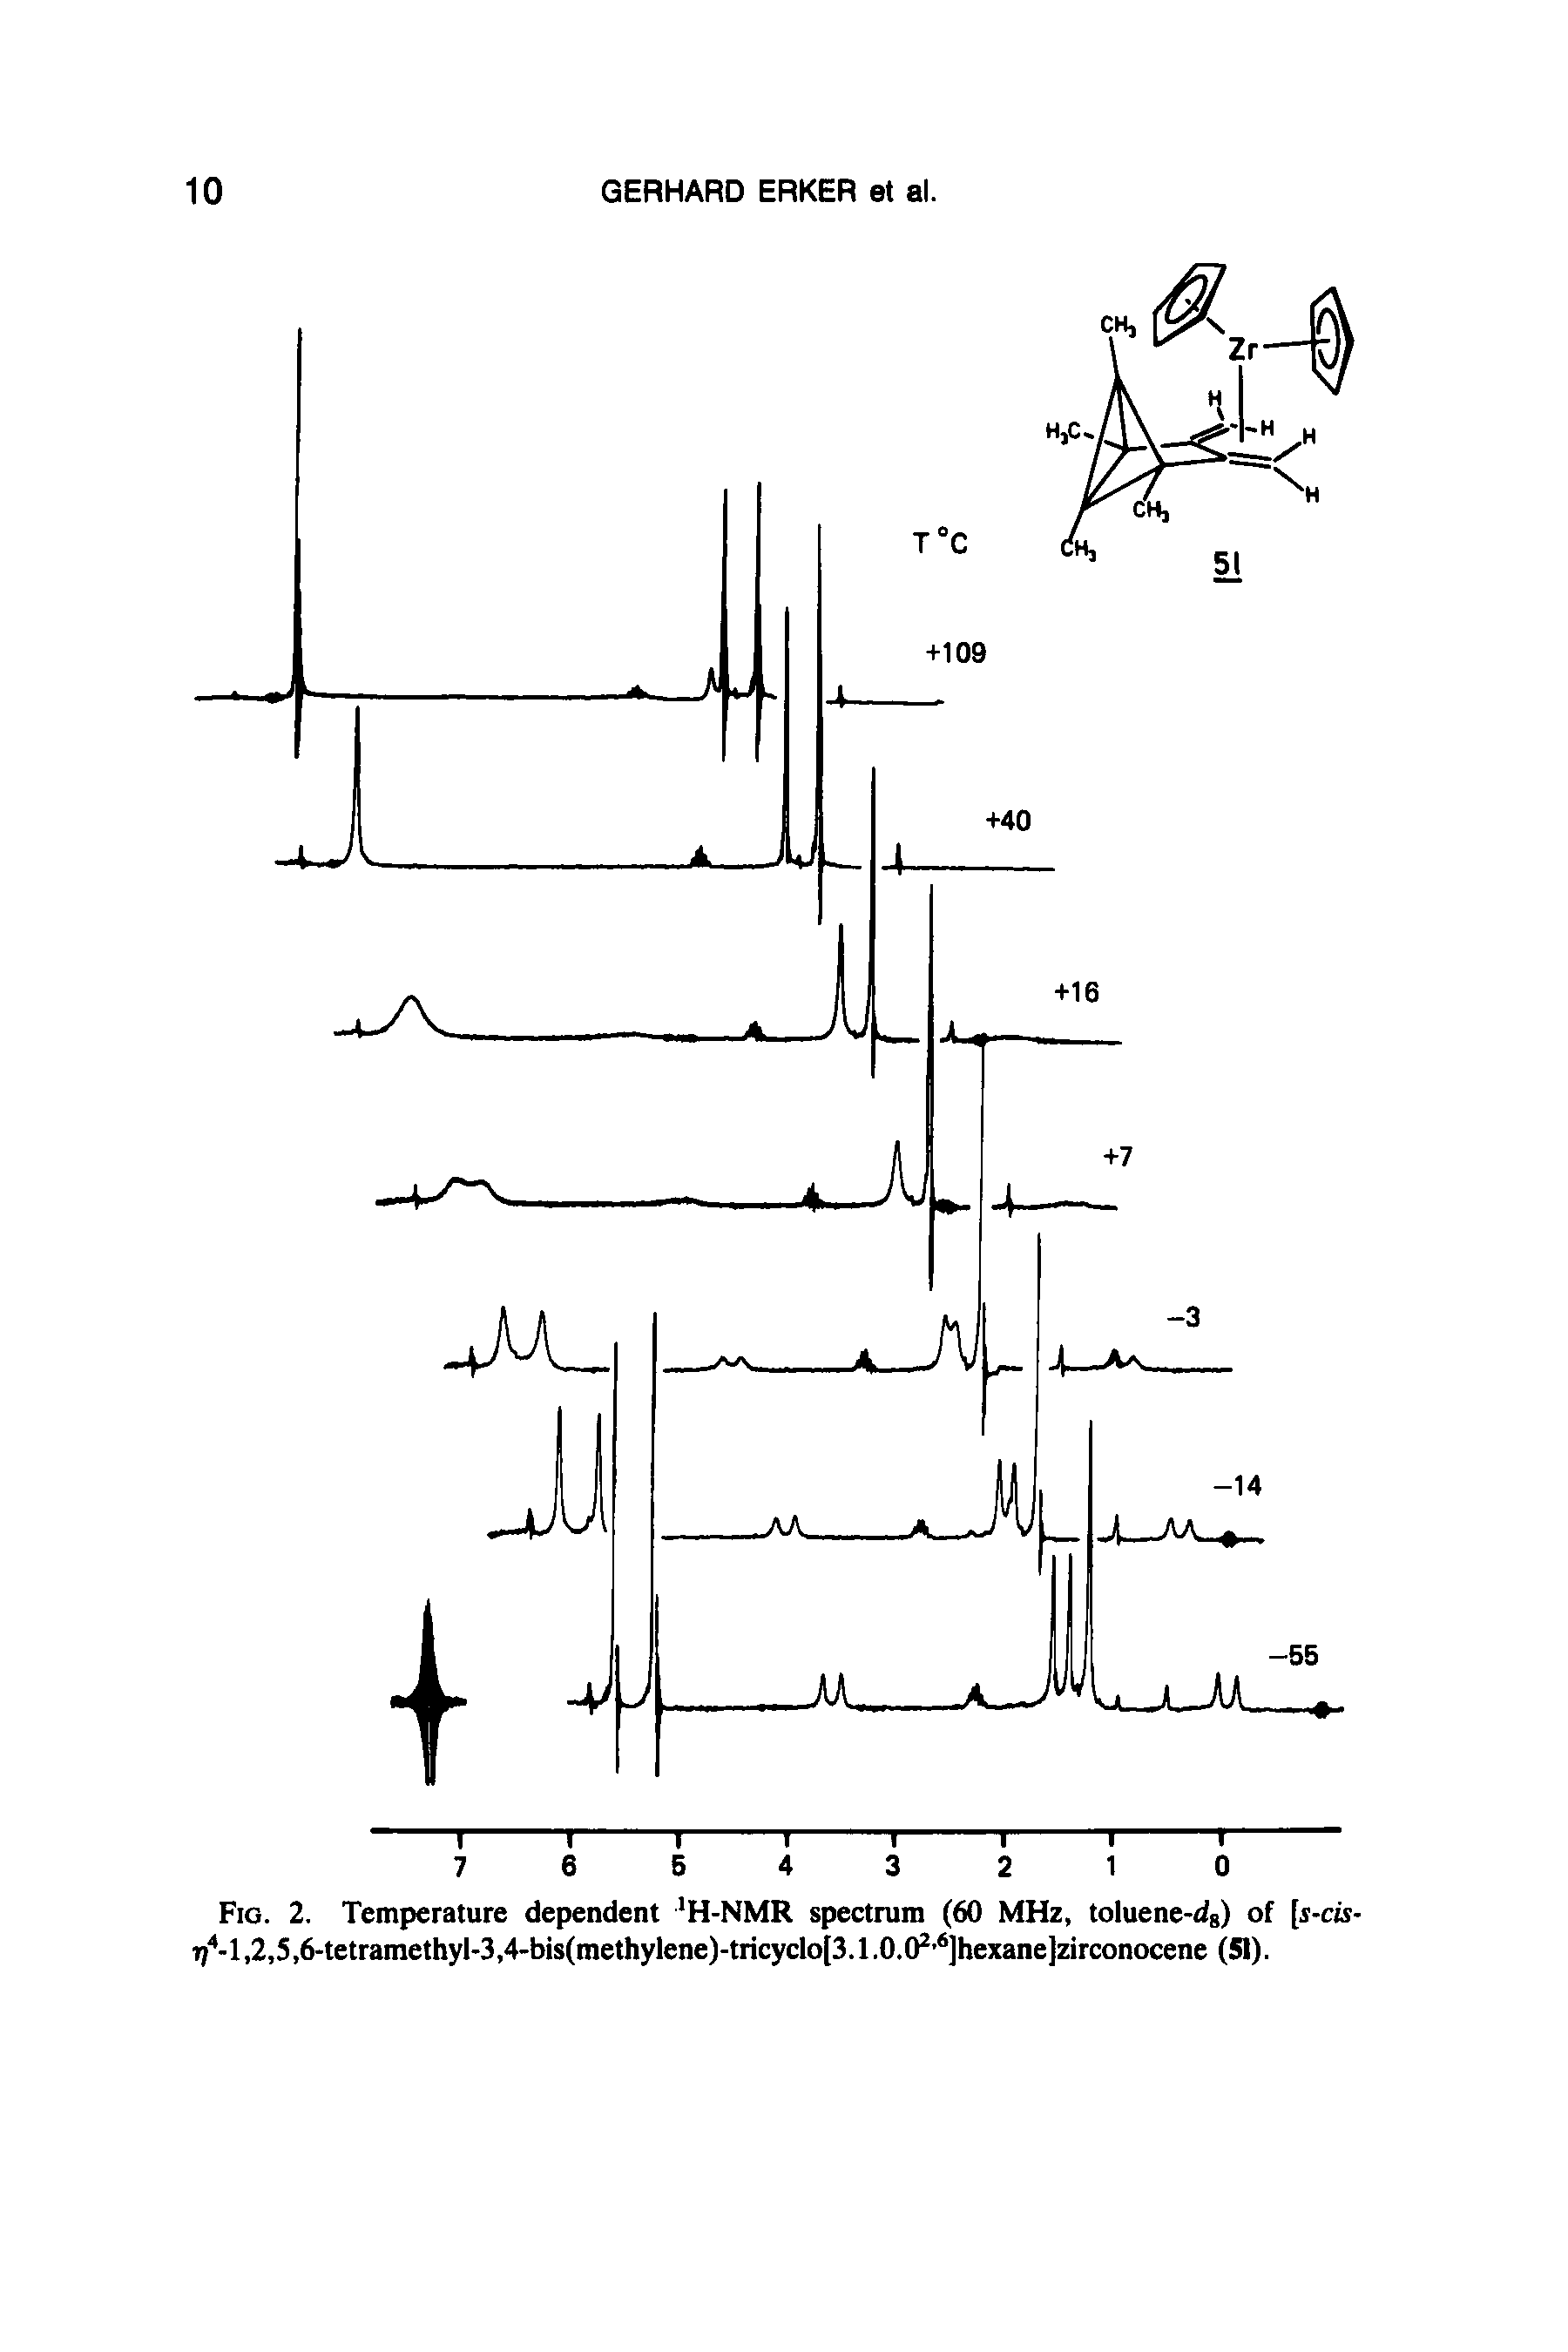 Fig. 2. Temperature dependent H-NMR spectrum (60 MHz, toluene-dg) of [s-cis-T/ -l,2,5,6-tetramethyl-3,4-bis(methylene)-tricyclo[3.1.0.0 ]hexane]zirconocene (51).